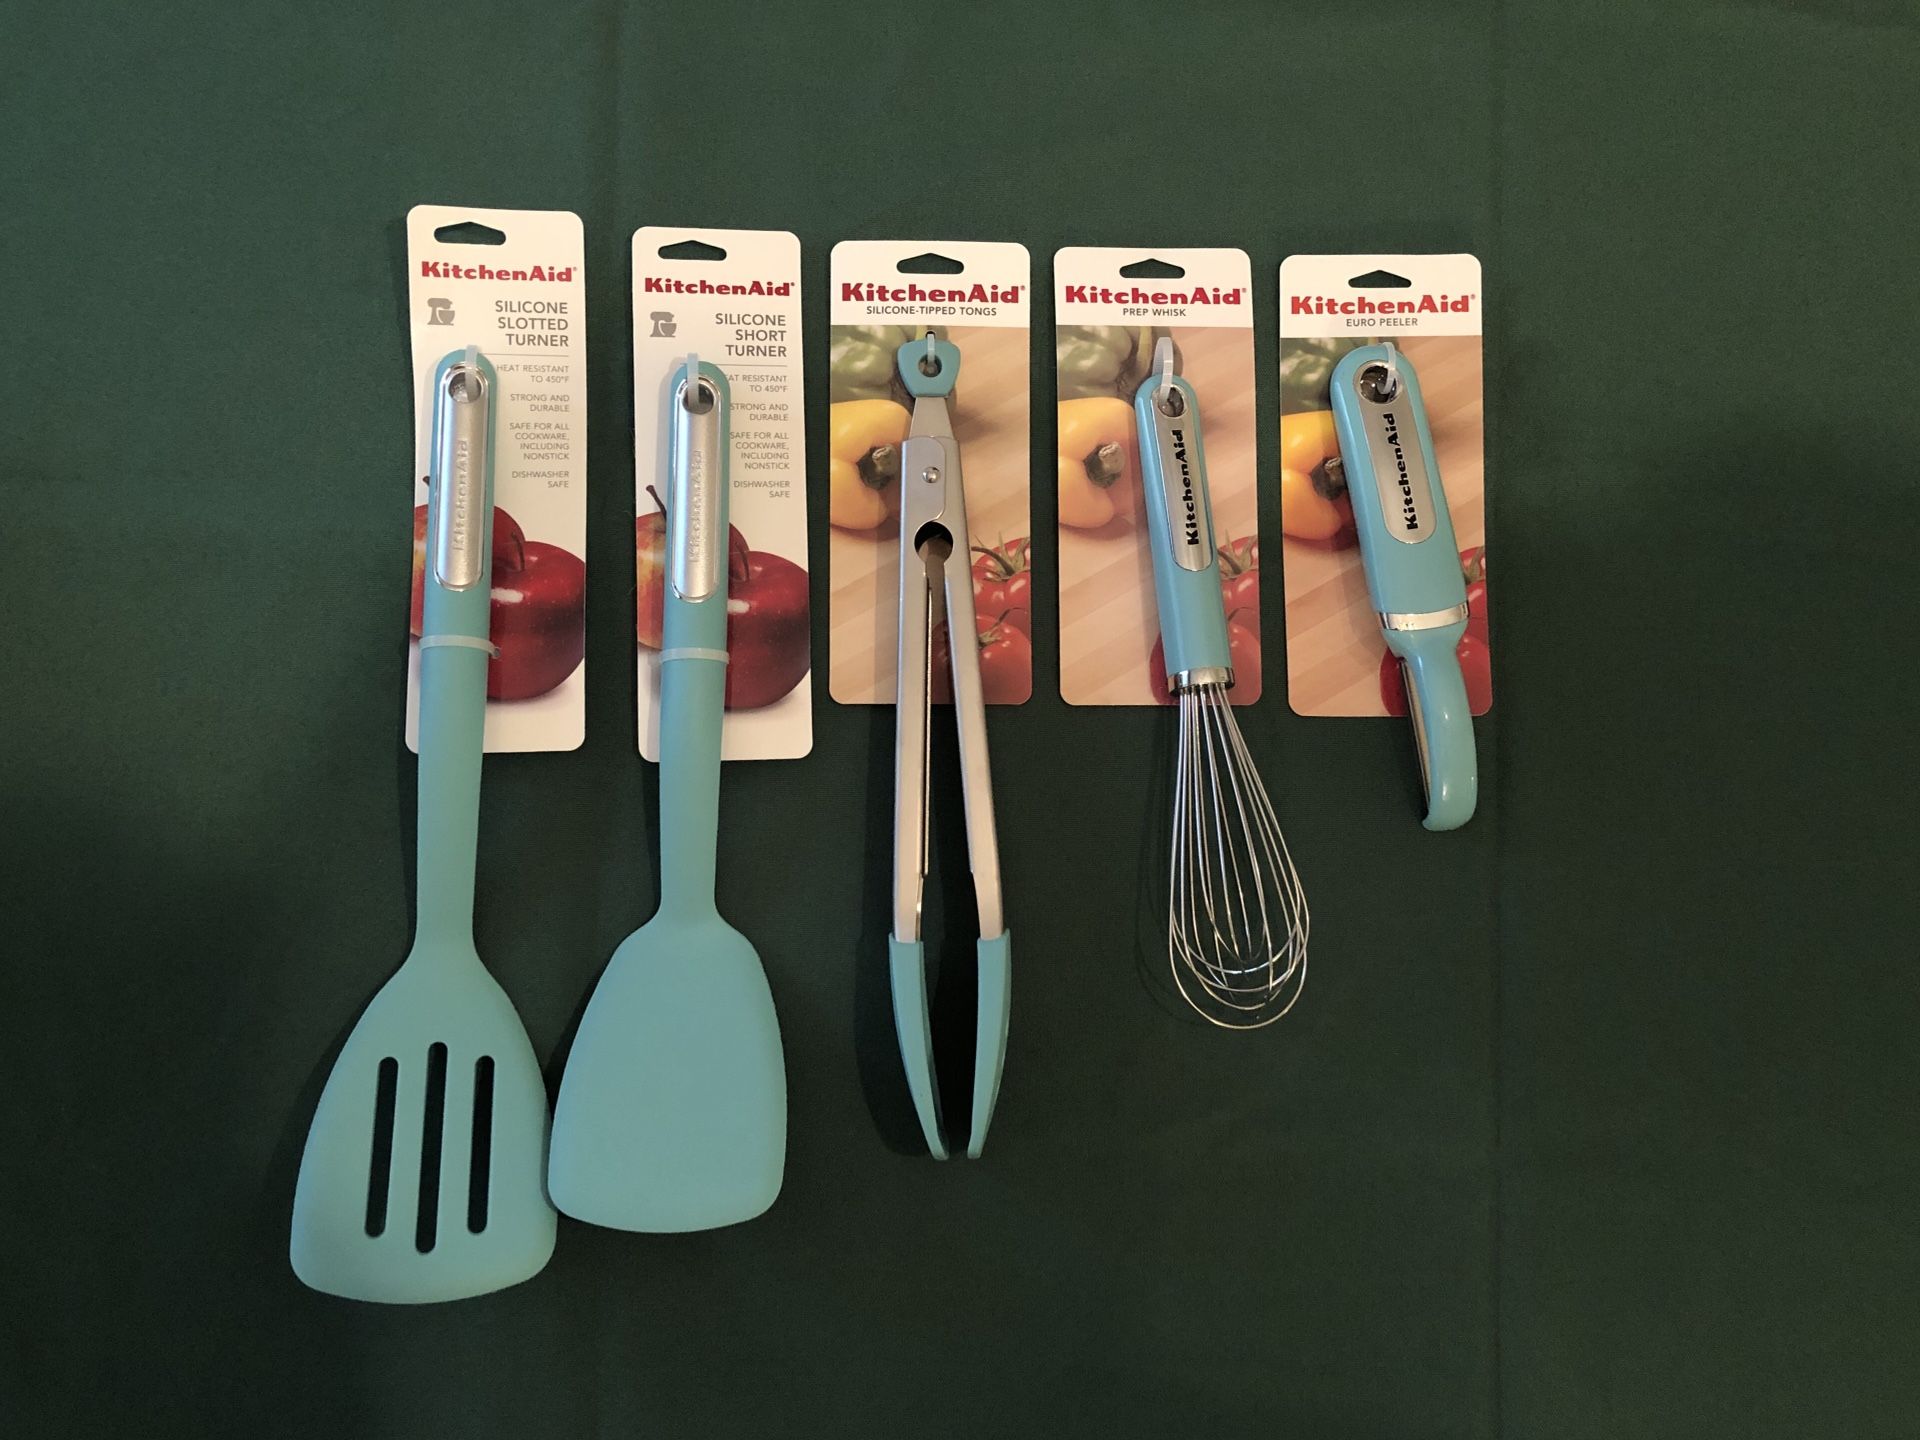 Kitchenaid Aqua sky kitchen utensils tools